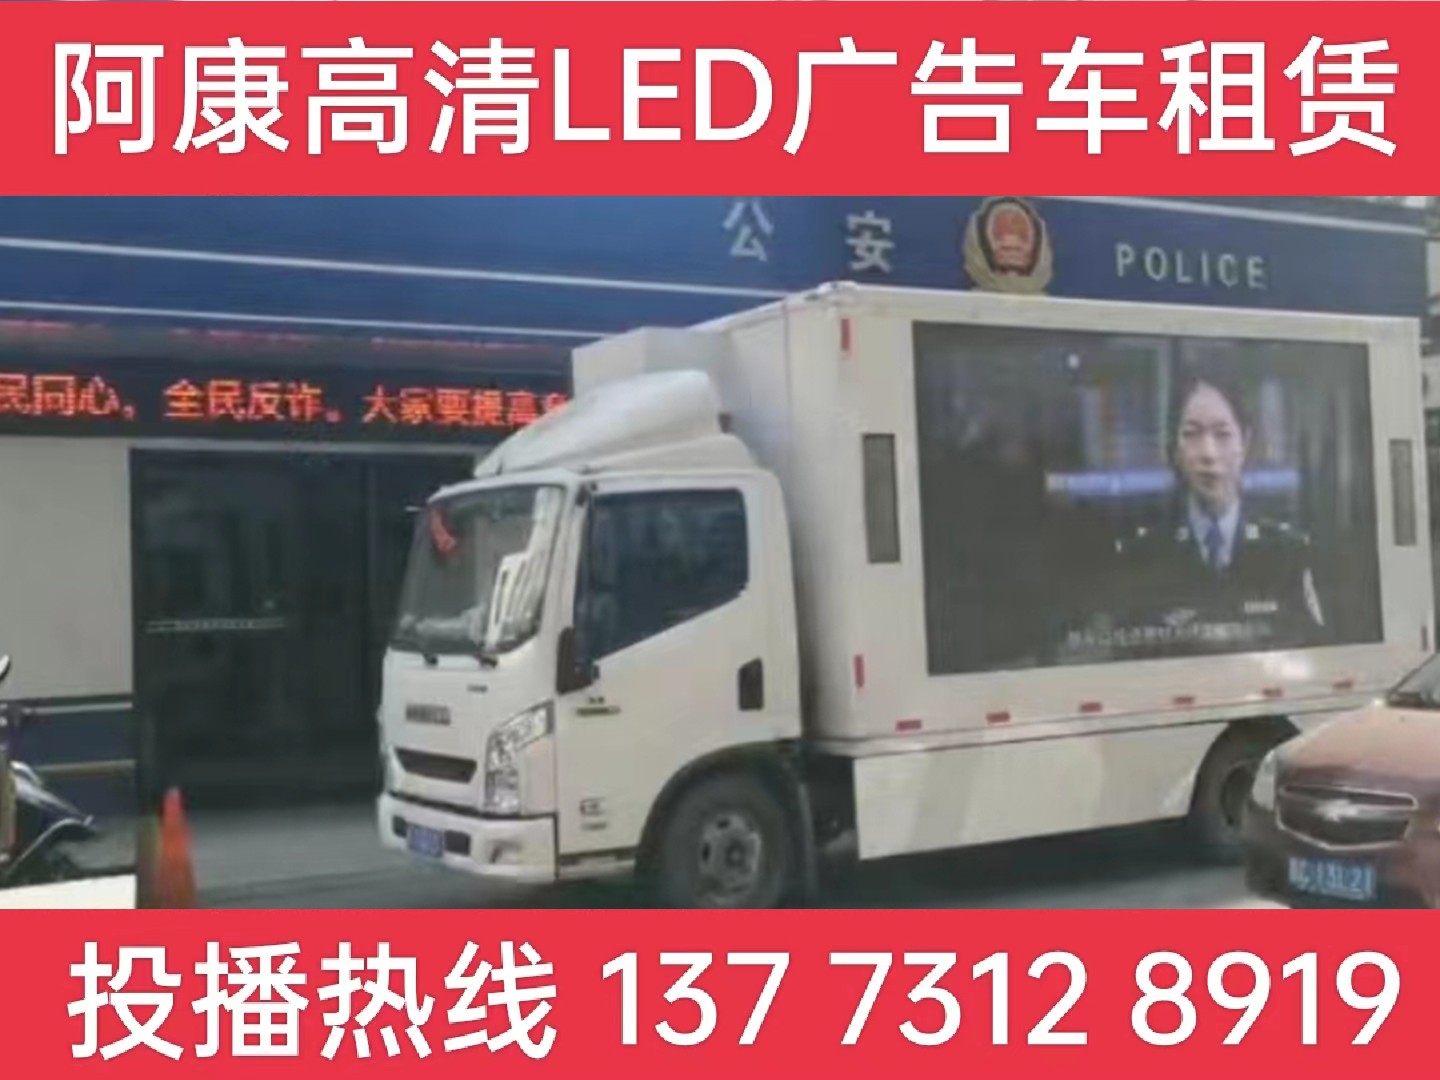 京口区LED广告车租赁-反诈宣传